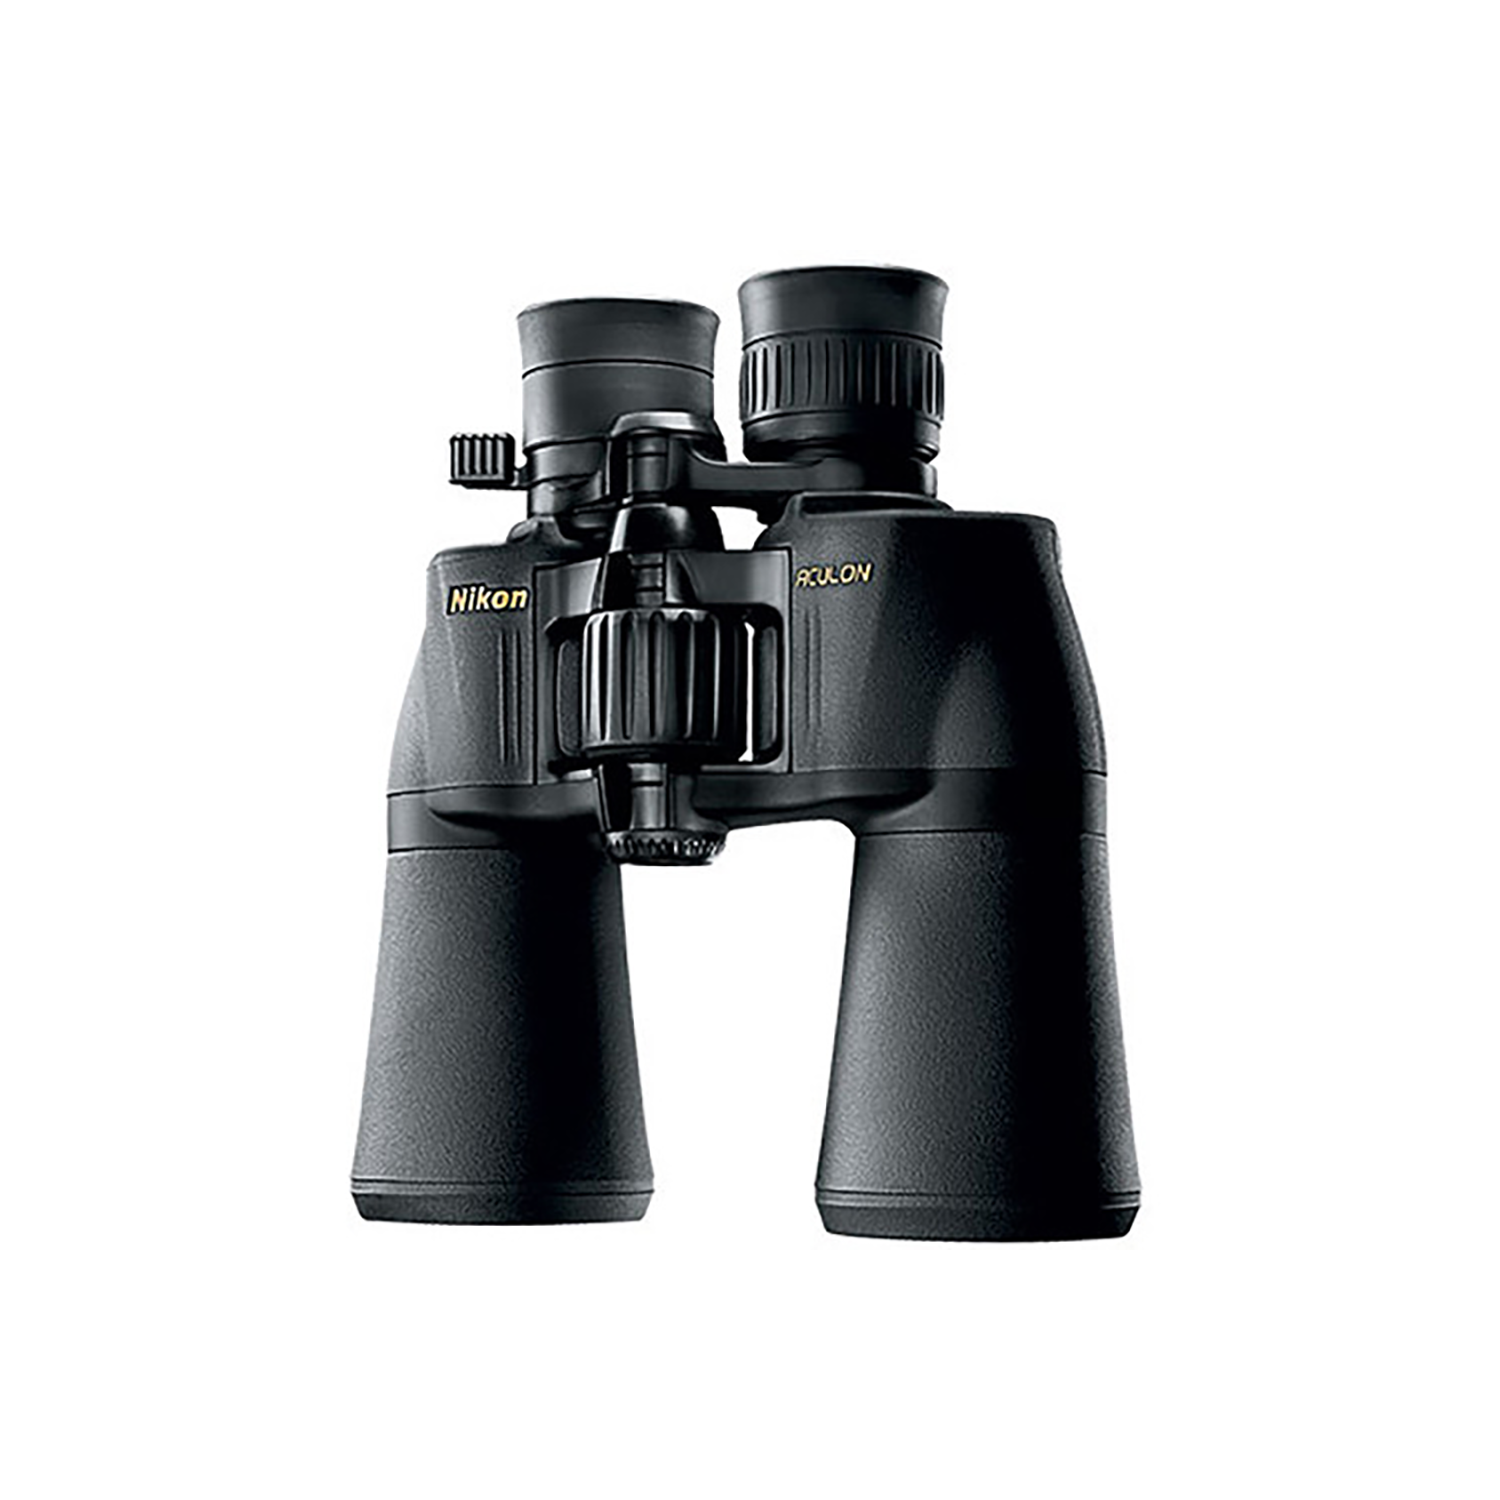 Nikon Aculon A211 Binoculars - 10-22x50